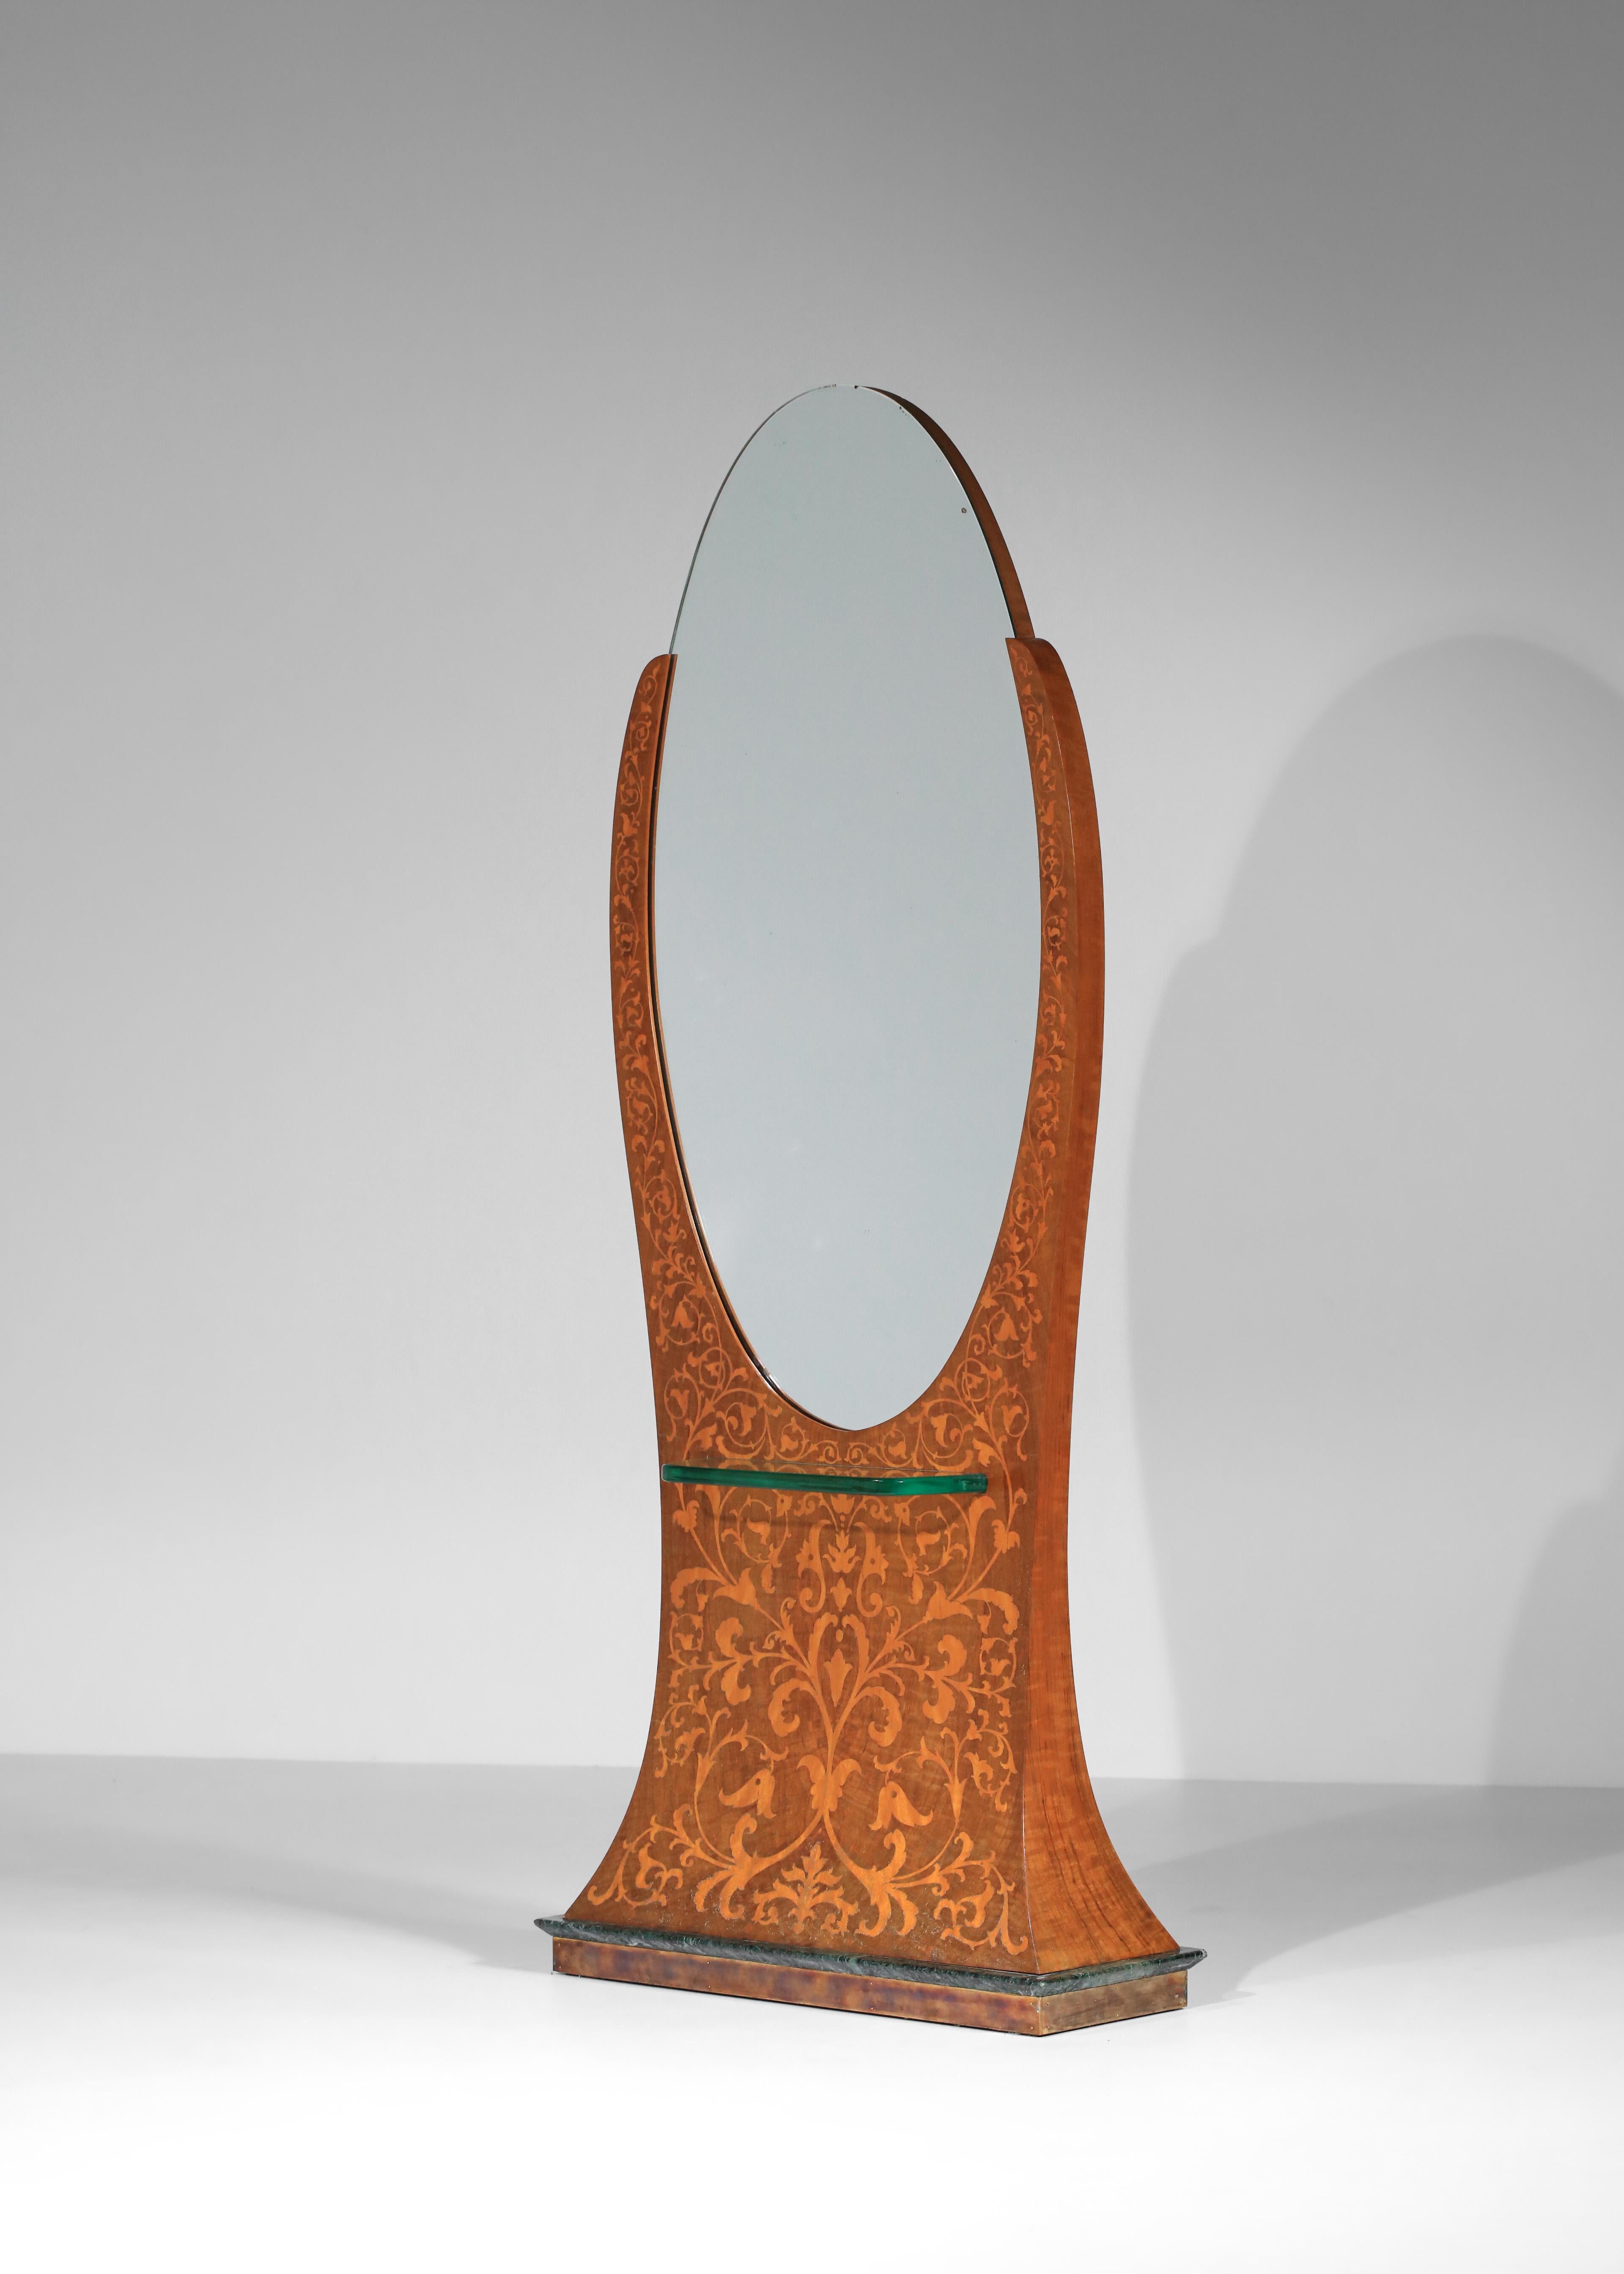 Großer italienischer Spiegel aus den 1930er Jahren. Holzstruktur mit Intarsienarbeiten, die ein florales Dekor auf dem Spiegel darstellen. Sockel aus grünem Marmor, umrahmt von Messing. Schöner Vintage-Zustand, mit Rissen im Originallack,